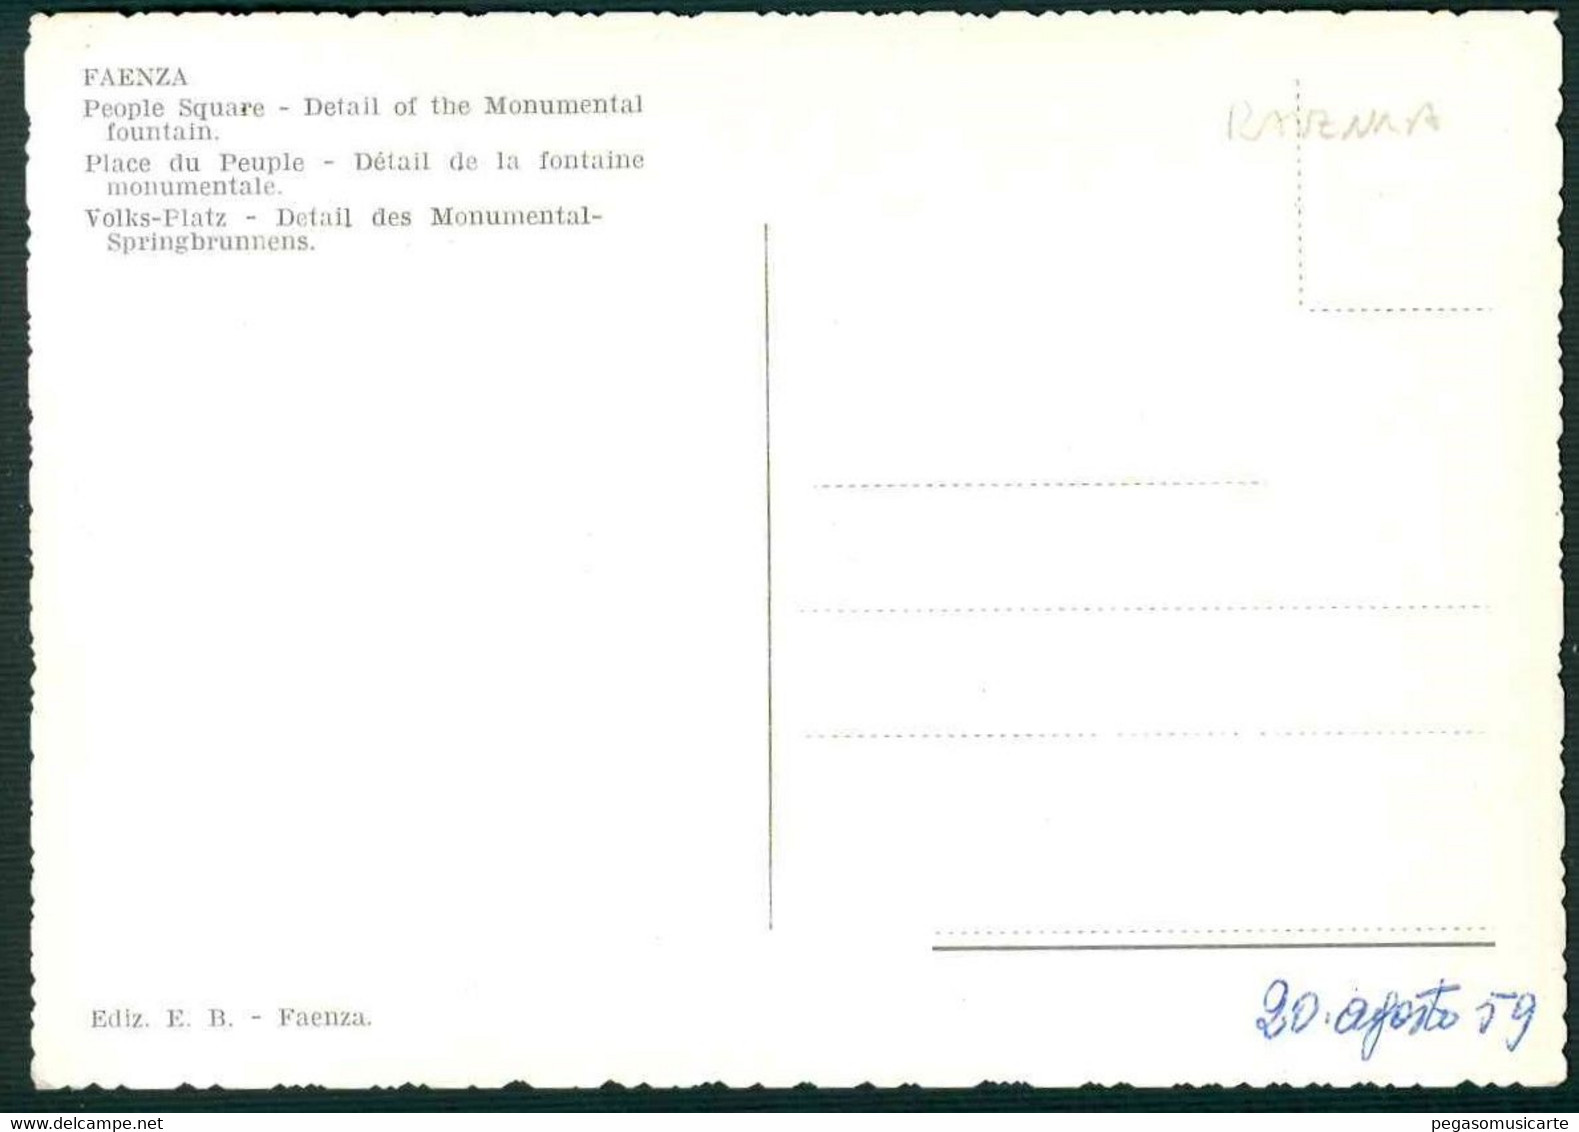 CLS096 - FAENZA PIAZZA DEL POPOLO - DETTAGLIO FONTE MONUMENTALE ANIMATA 1950 CIRCA - Faenza